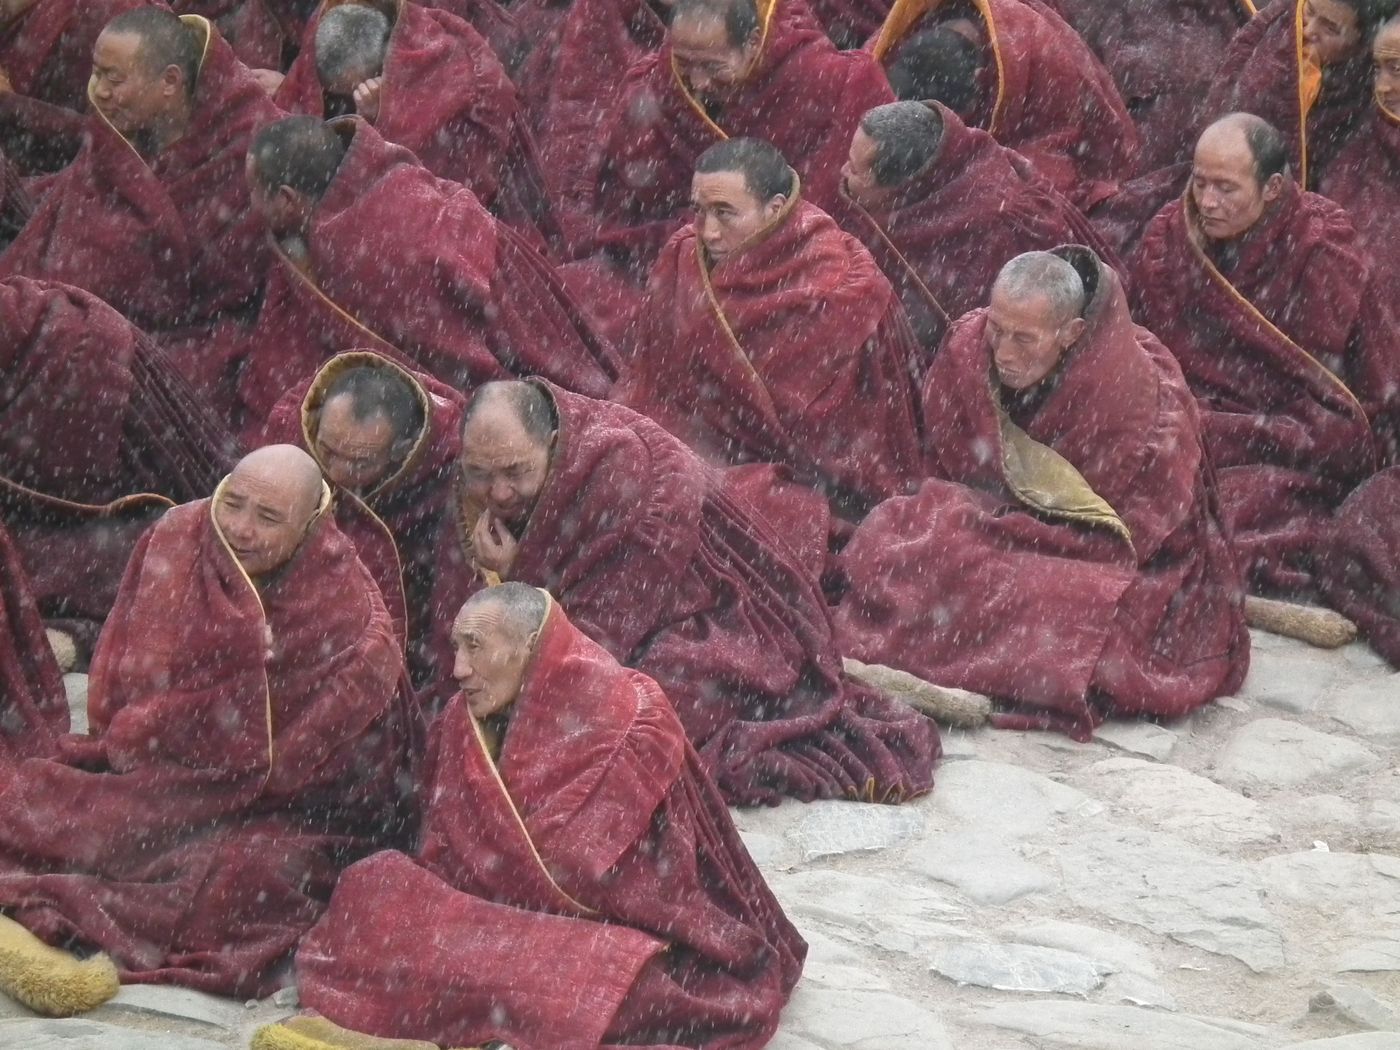 Les moines sous la neige